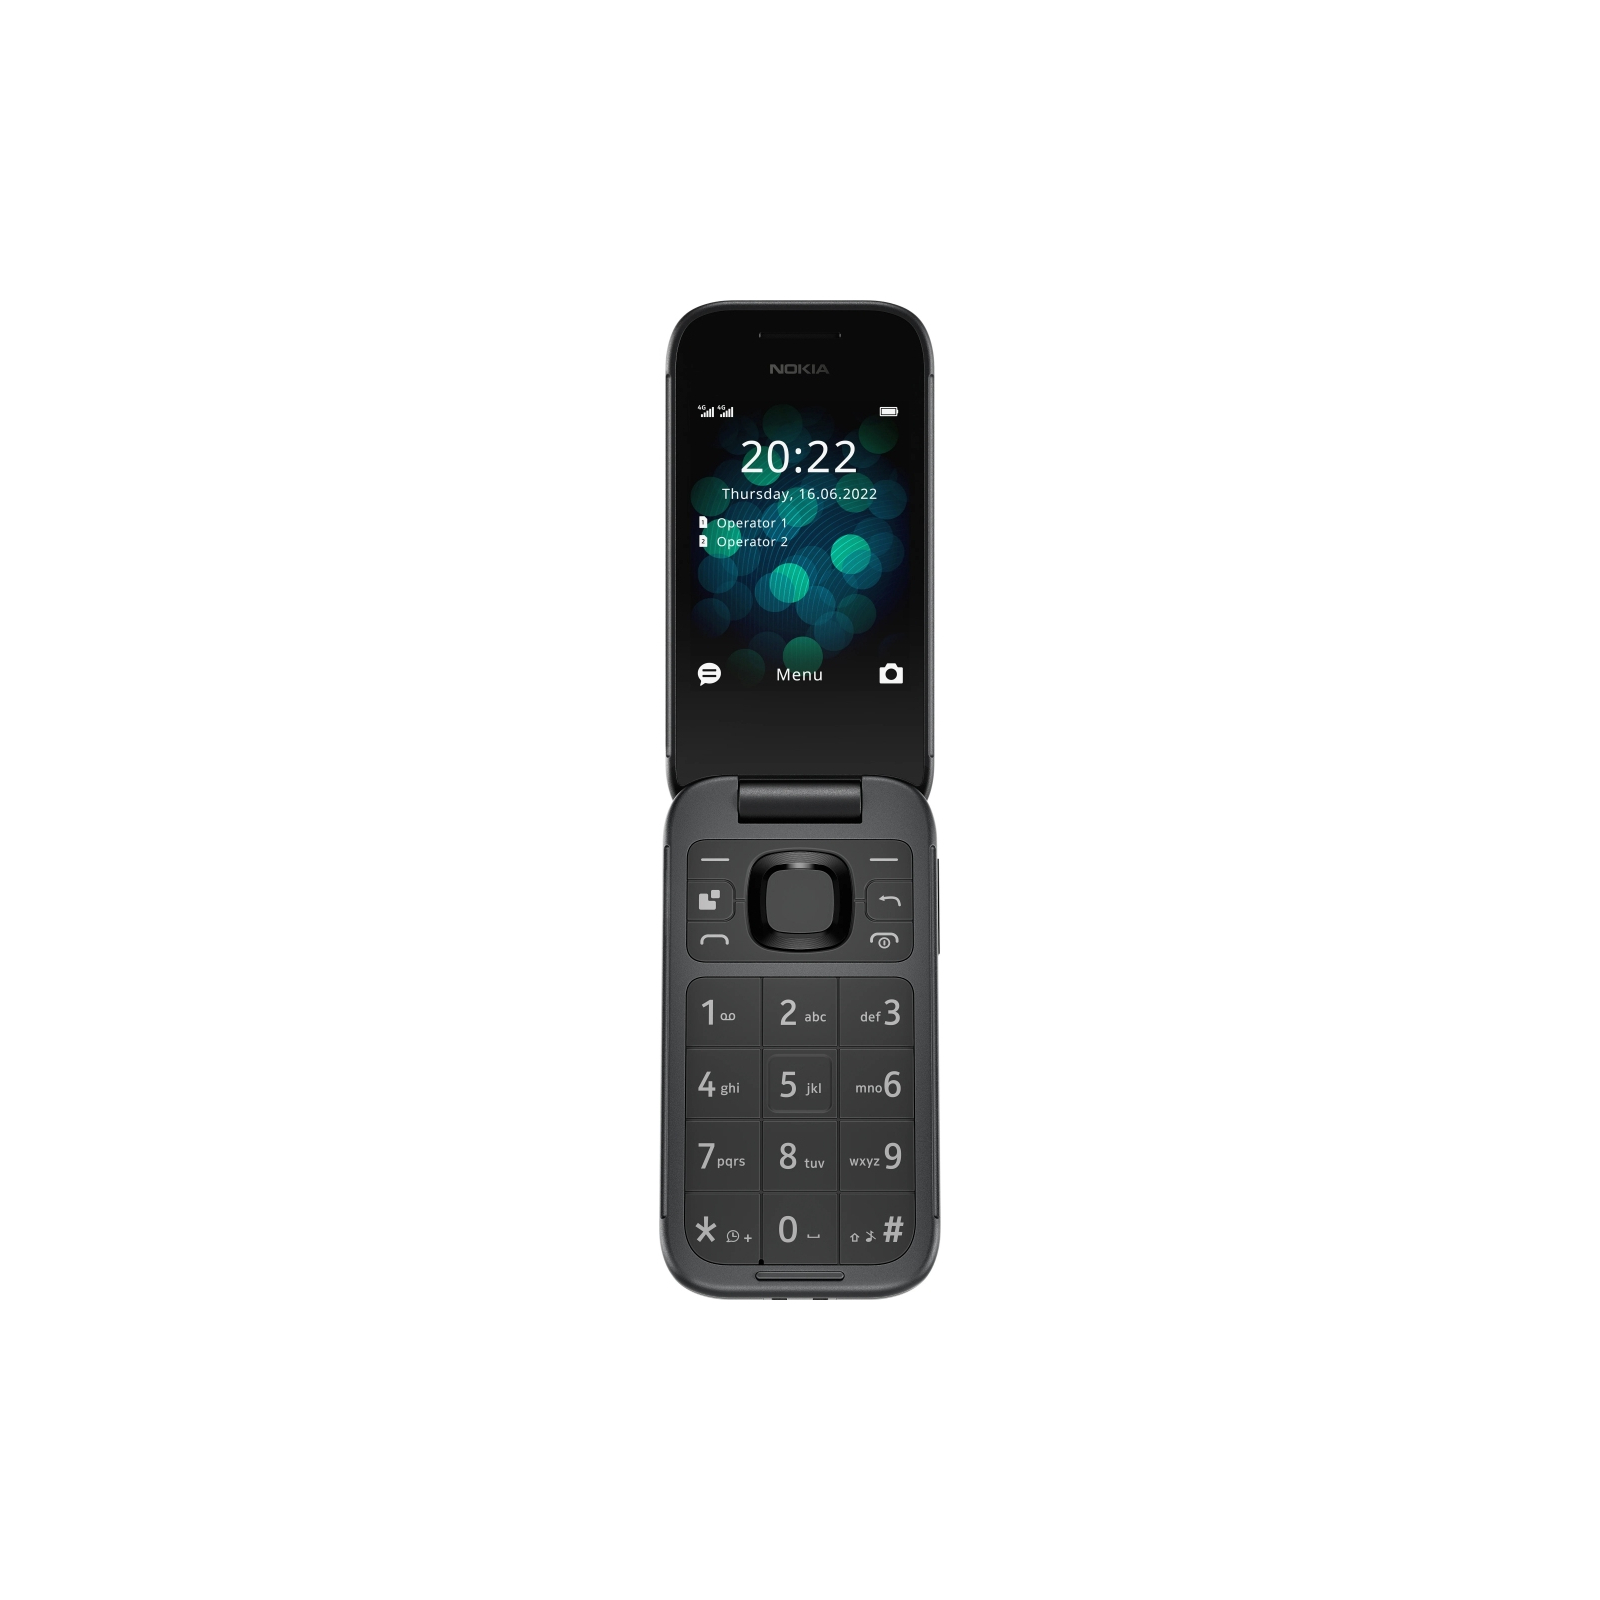 Мобільний телефон Nokia 2660 Flip Pink зображення 2